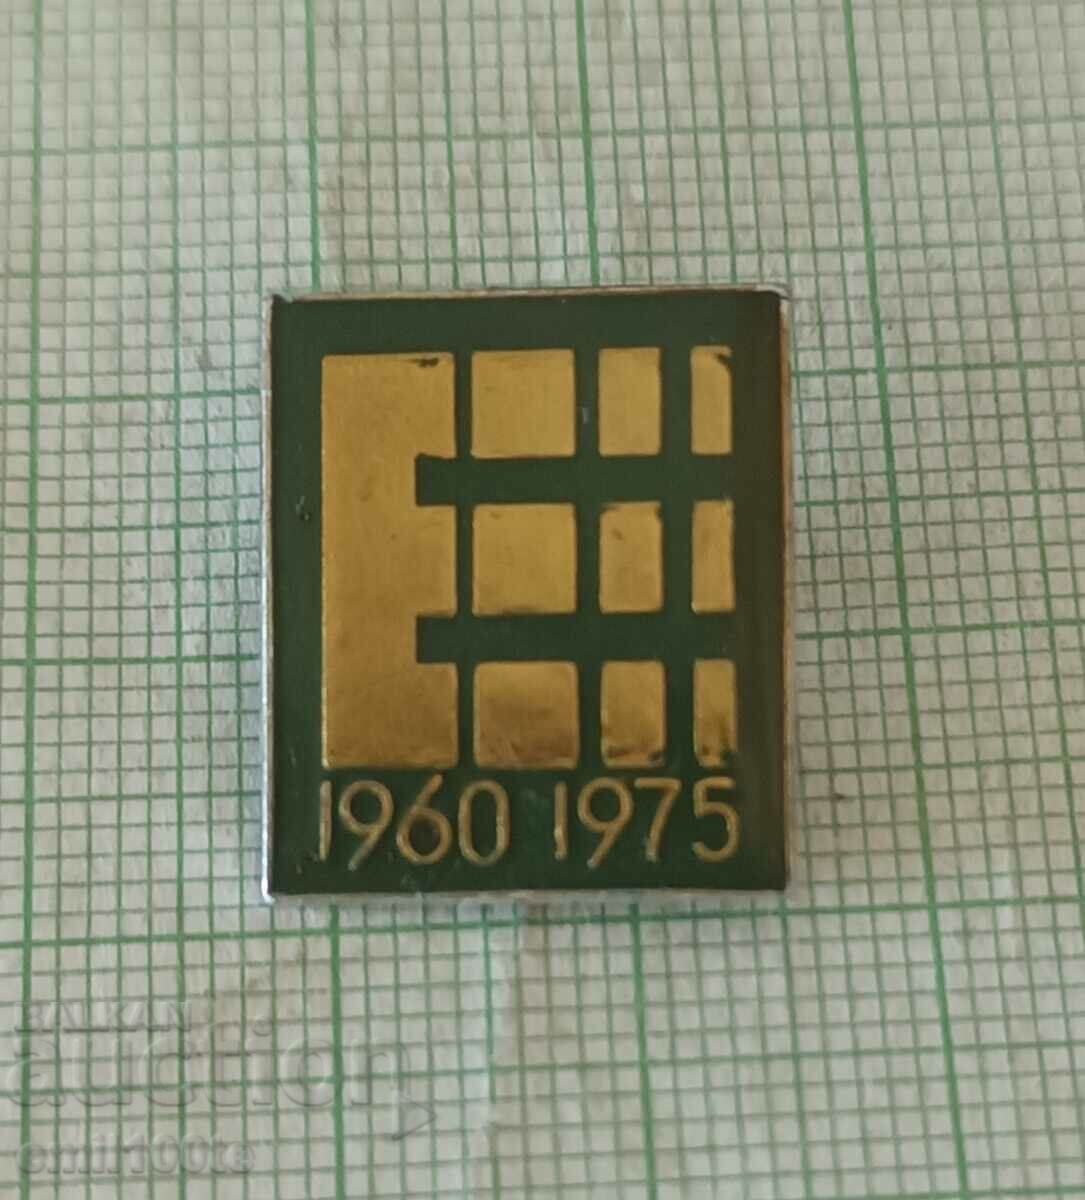 Σήμα - 15 χρόνια εργοστασίου ηλεκτρονικών 1960 1975